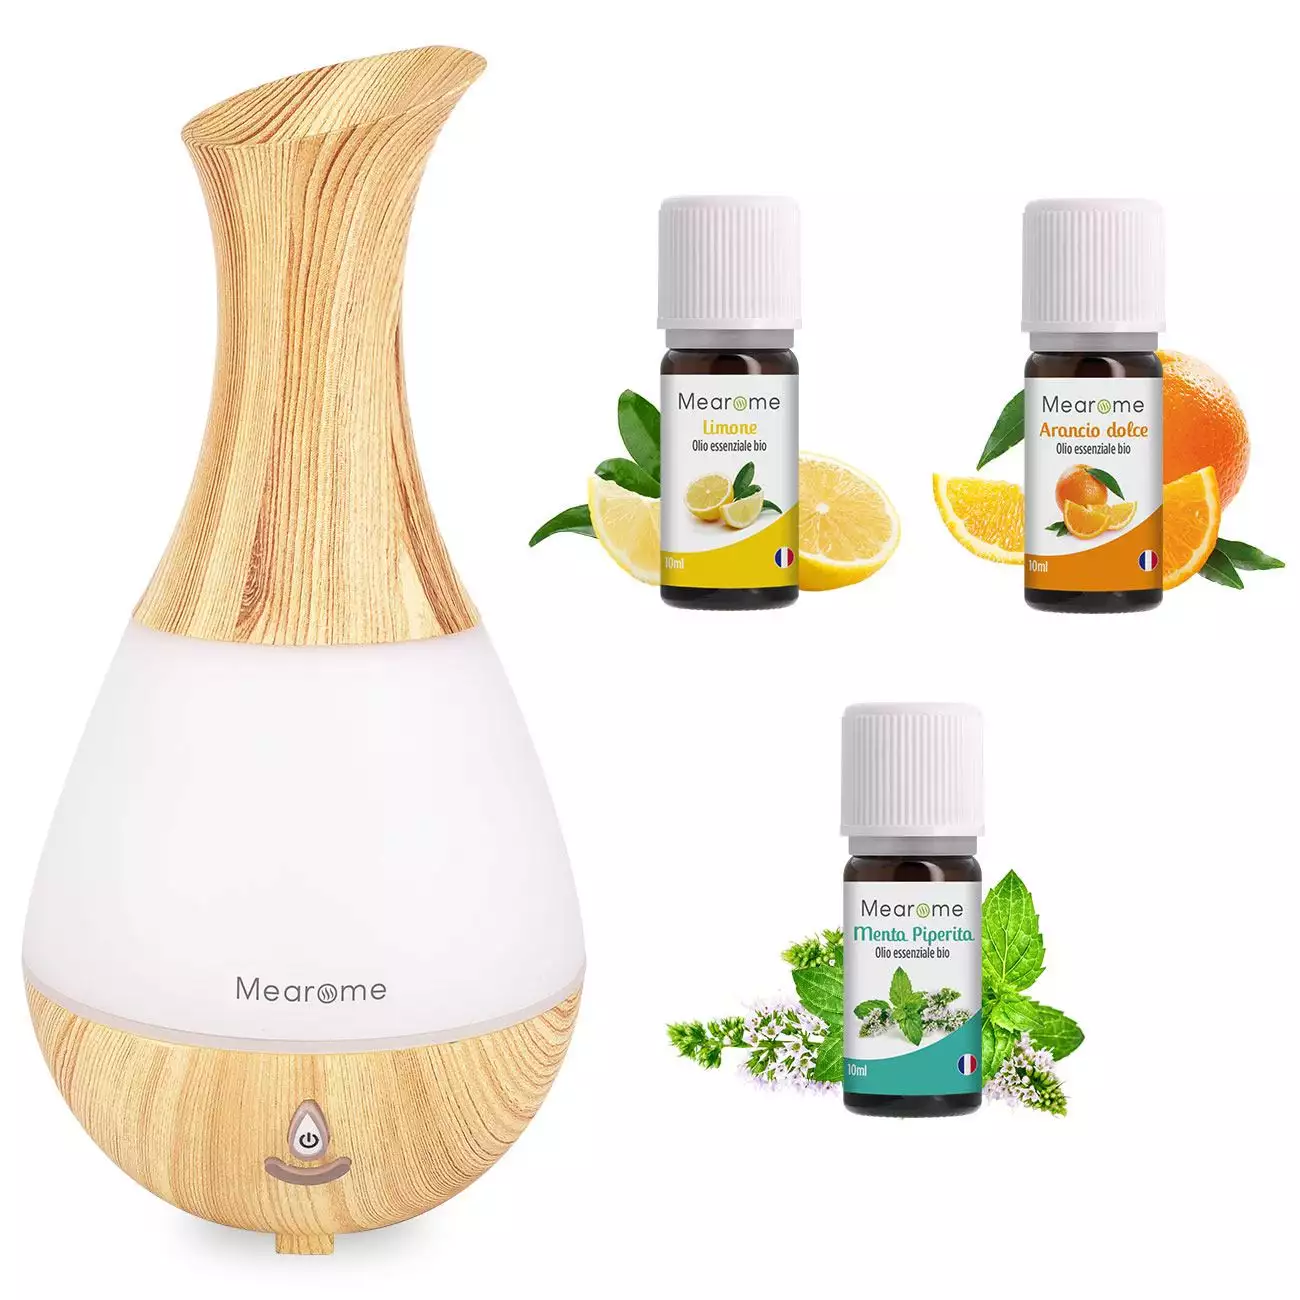 Immagine della confezione dell'Olio essenziale Kit Aromaterapia - Diffusore + 3 Oli Essenziali